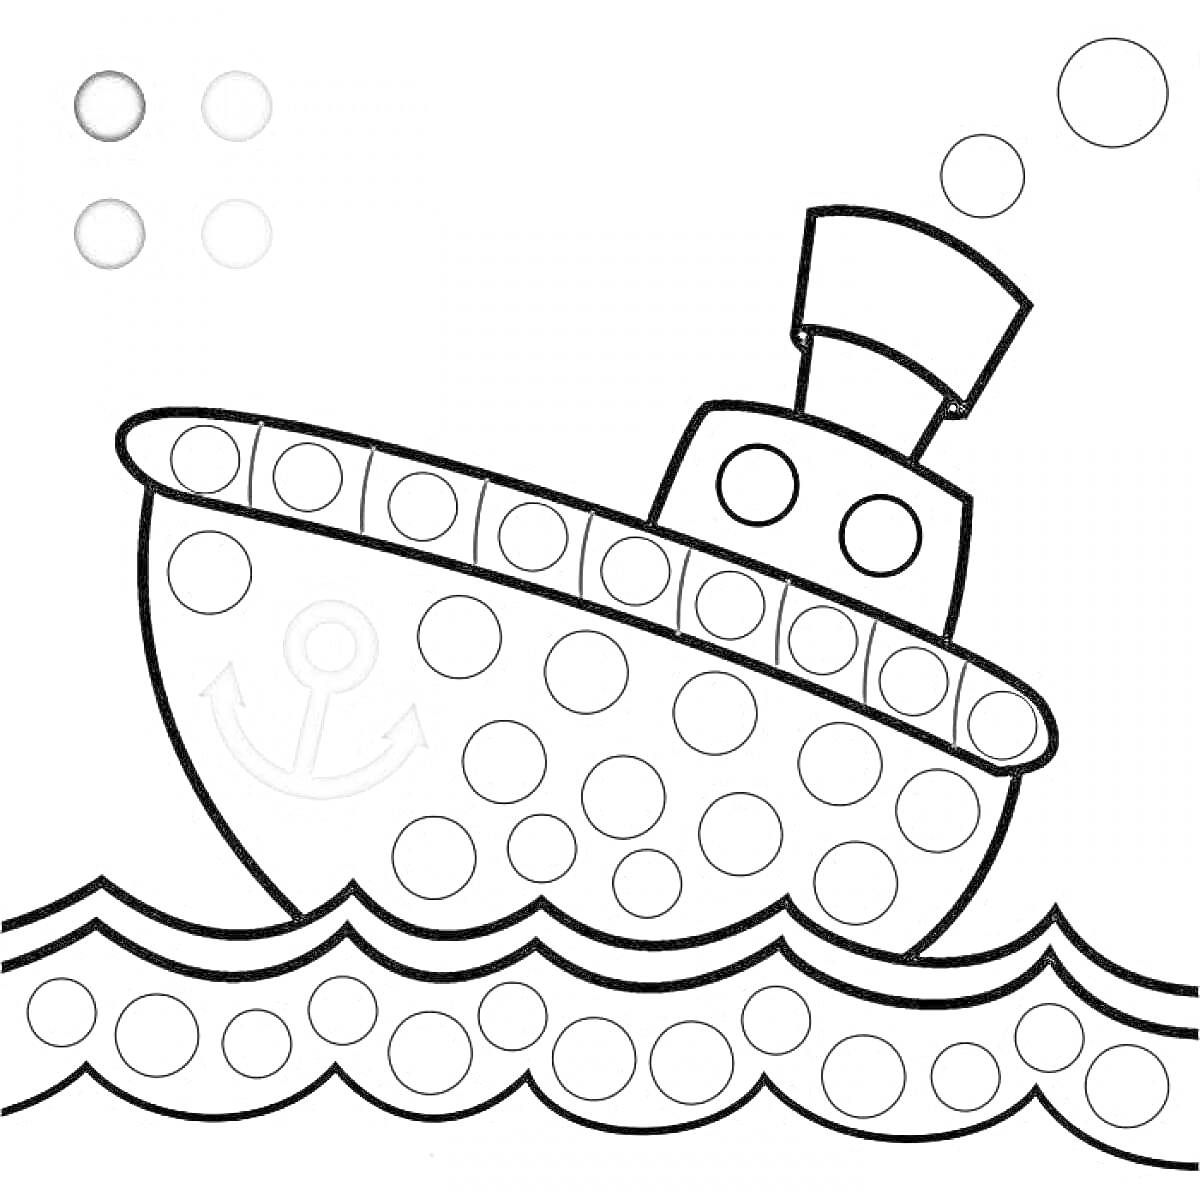 Раскраска Раскраска с использованием пальчиковых штампов (кораблик, вода, якорь, пузырьки)